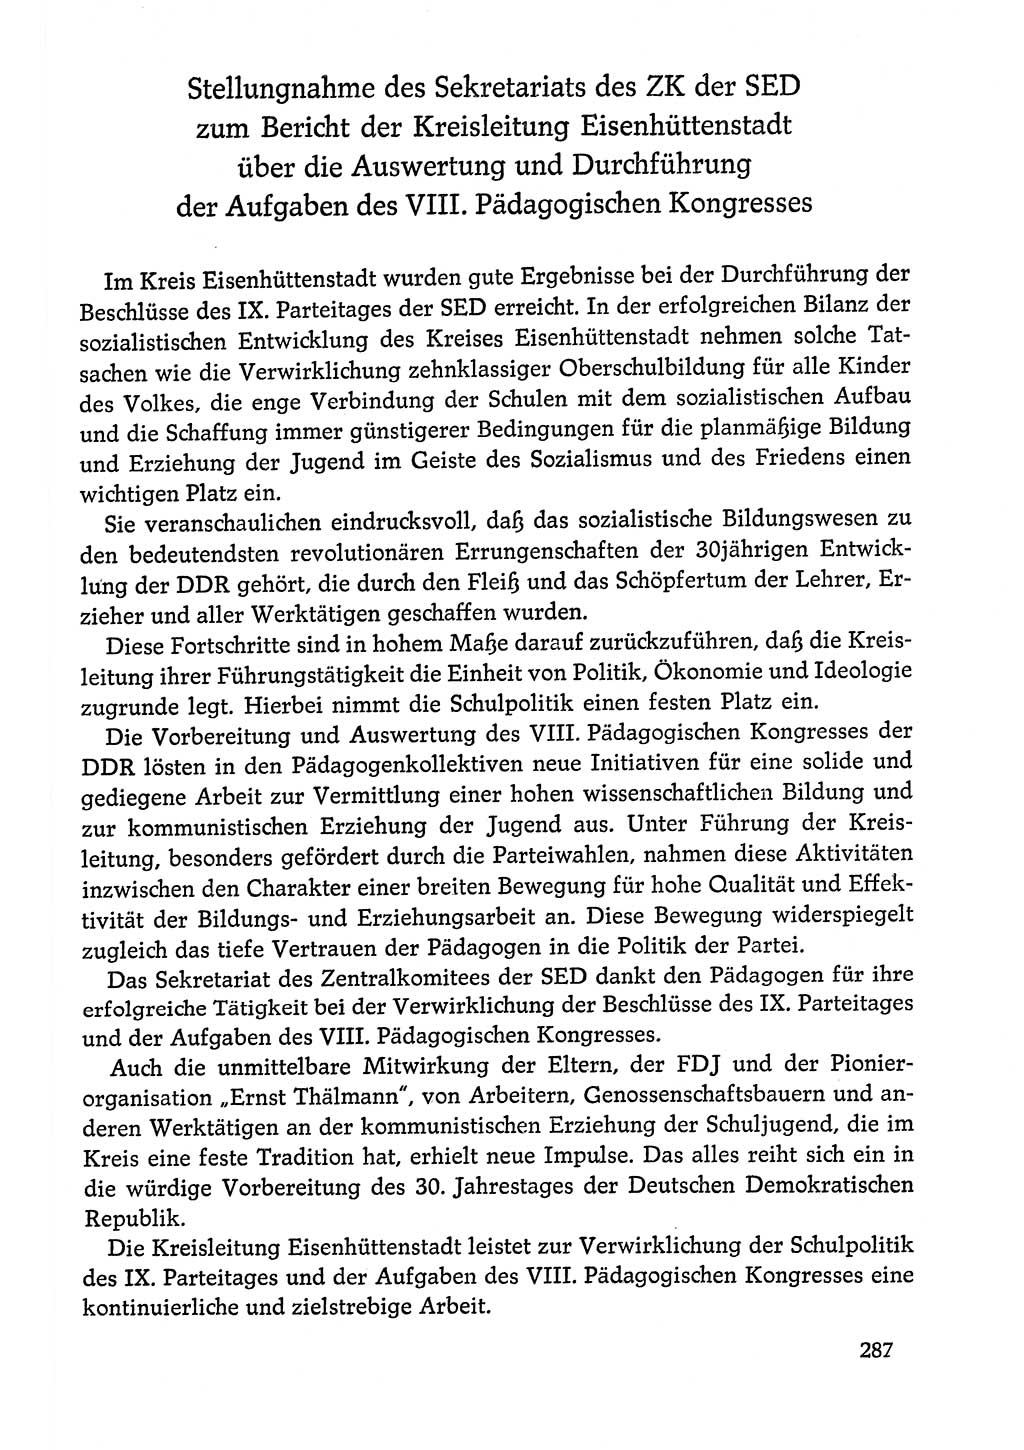 Dokumente der Sozialistischen Einheitspartei Deutschlands (SED) [Deutsche Demokratische Republik (DDR)] 1978-1979, Seite 287 (Dok. SED DDR 1978-1979, S. 287)